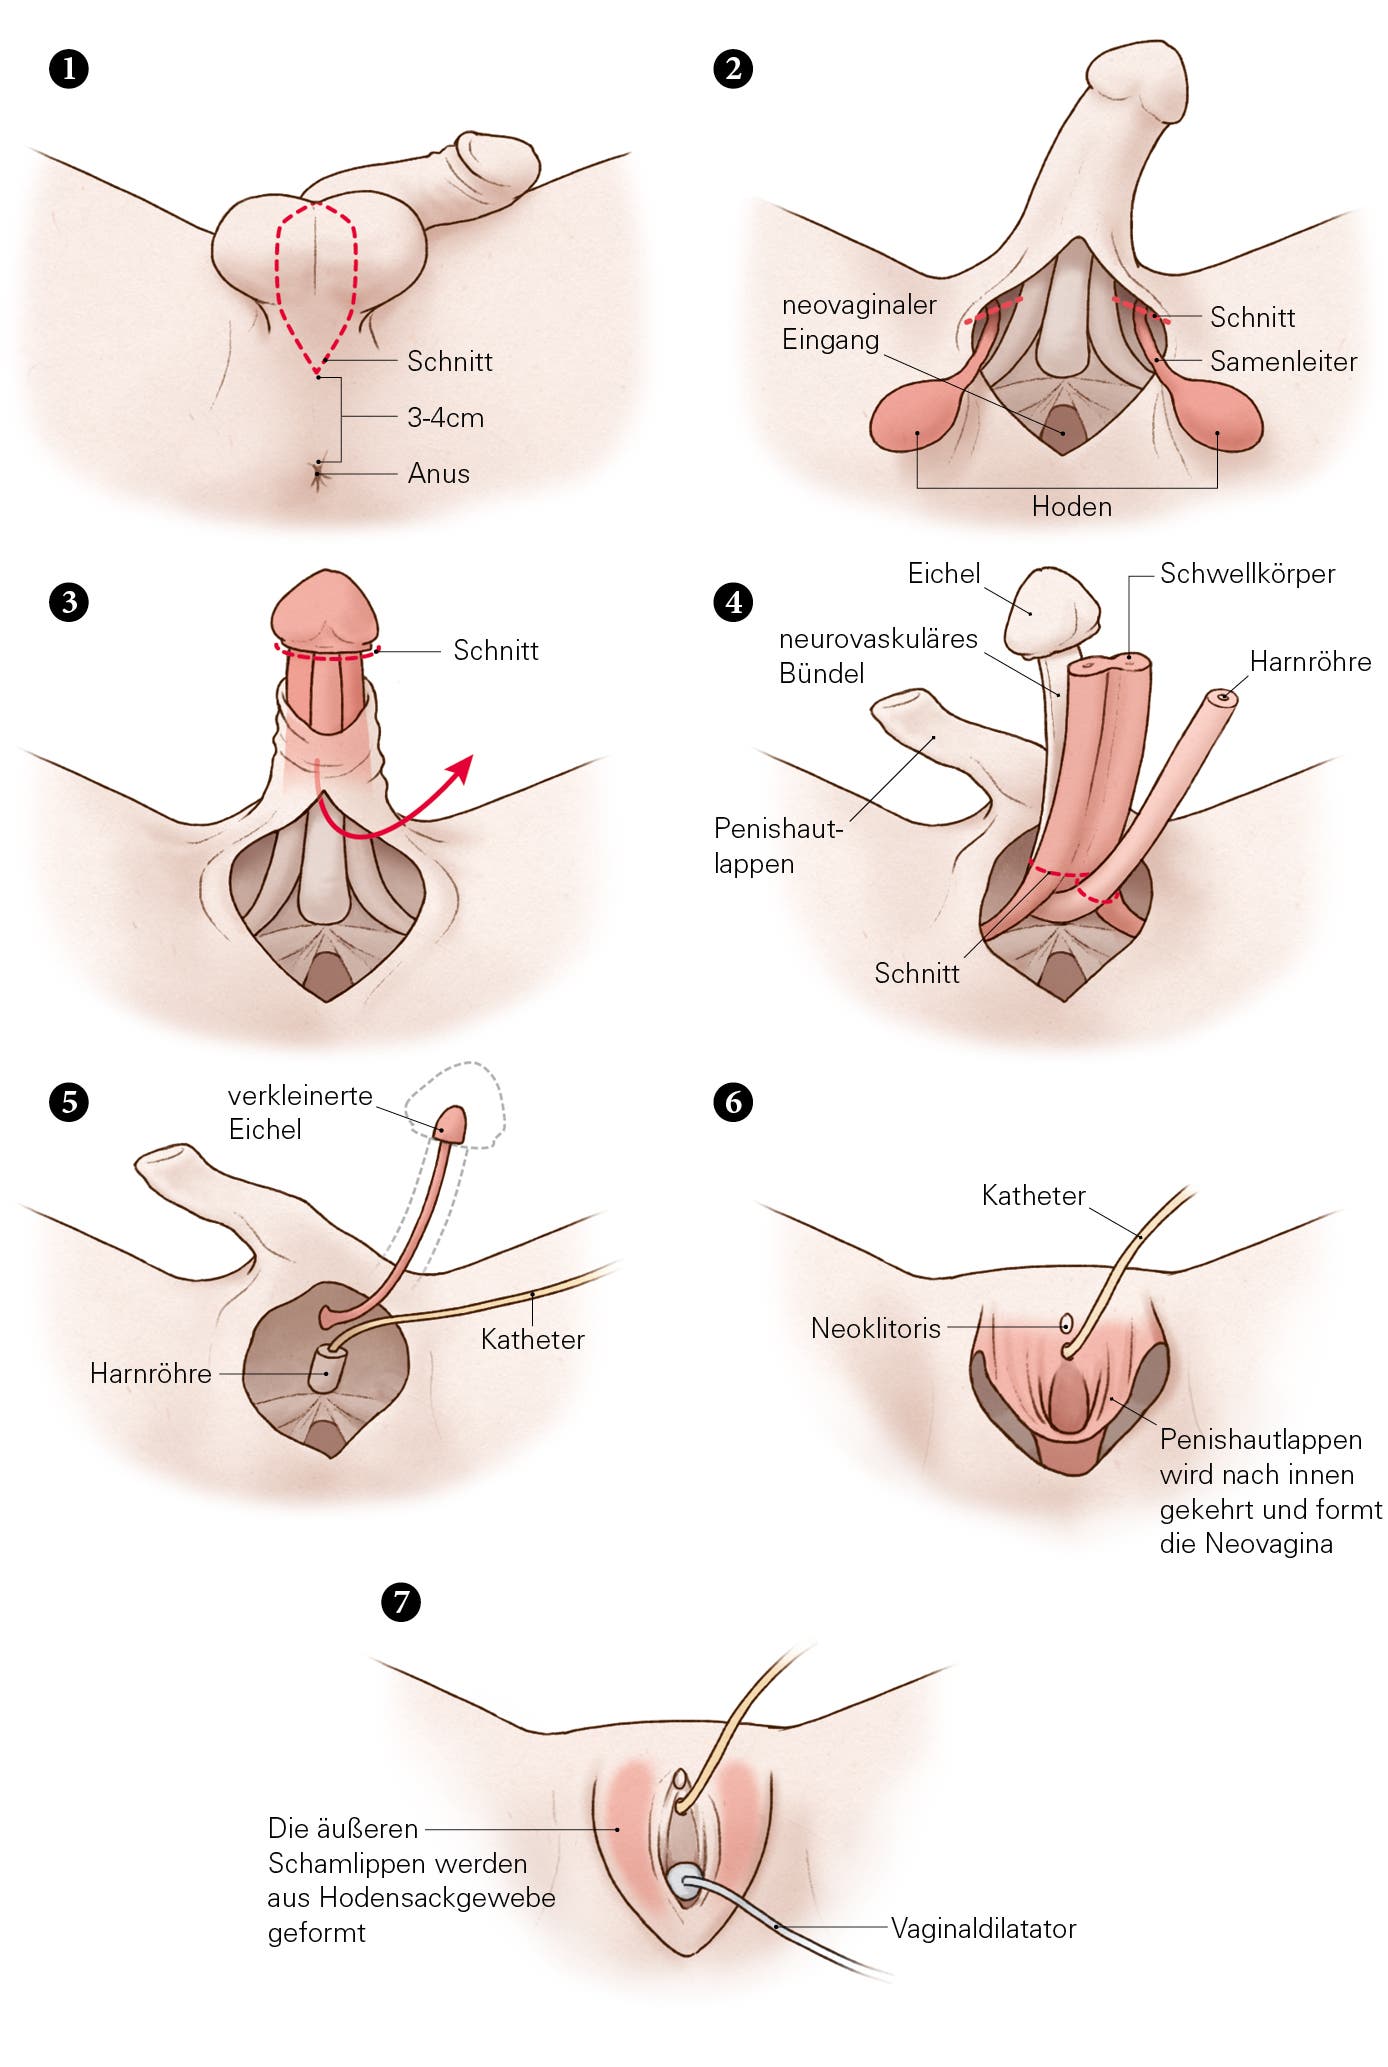 Mit Hilfe eines operativen Eingriffs, lässt sich aus einem Penis eine Neovagina formen. Mehrere Schritte sind dafür nötig.